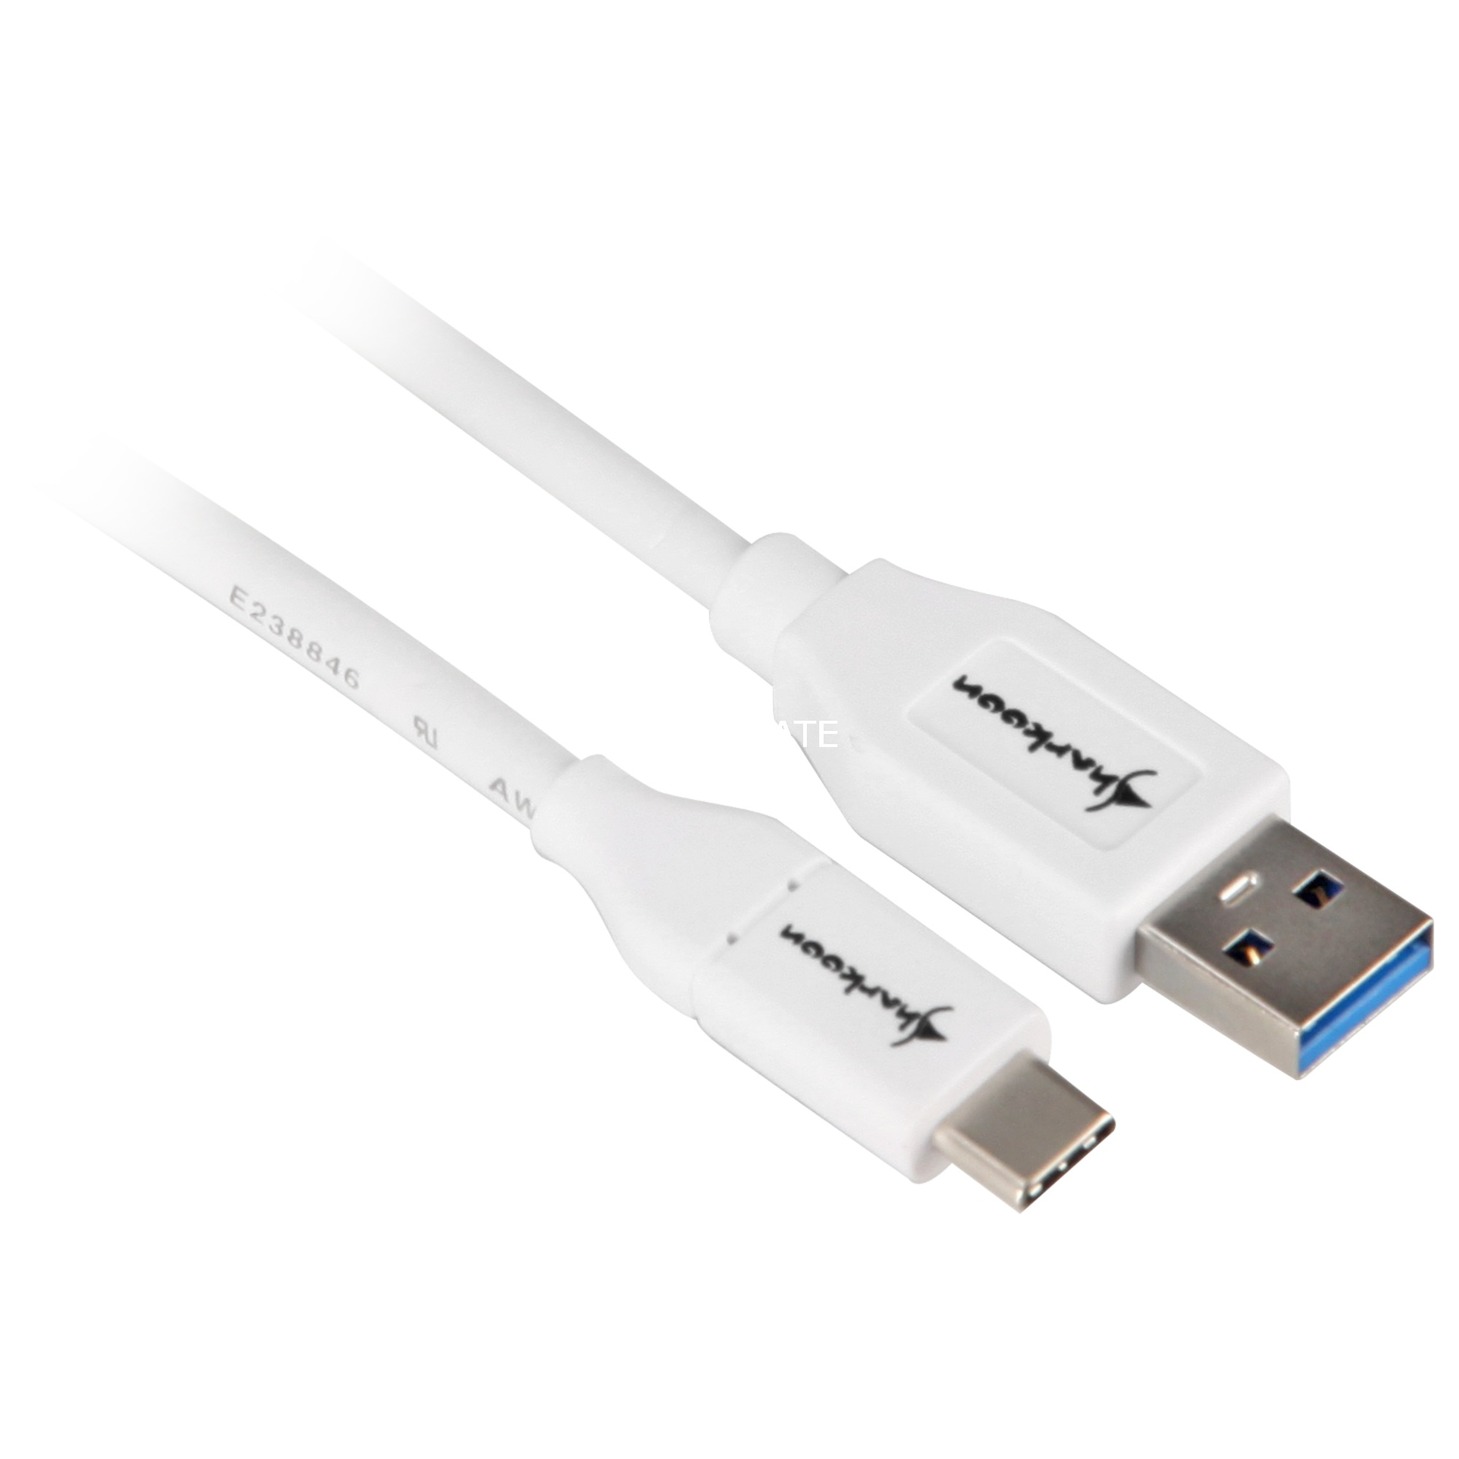 Image of Alternate - Kabel USB 3.2 (Gen. 2) Stecker A > Stecker C online einkaufen bei Alternate